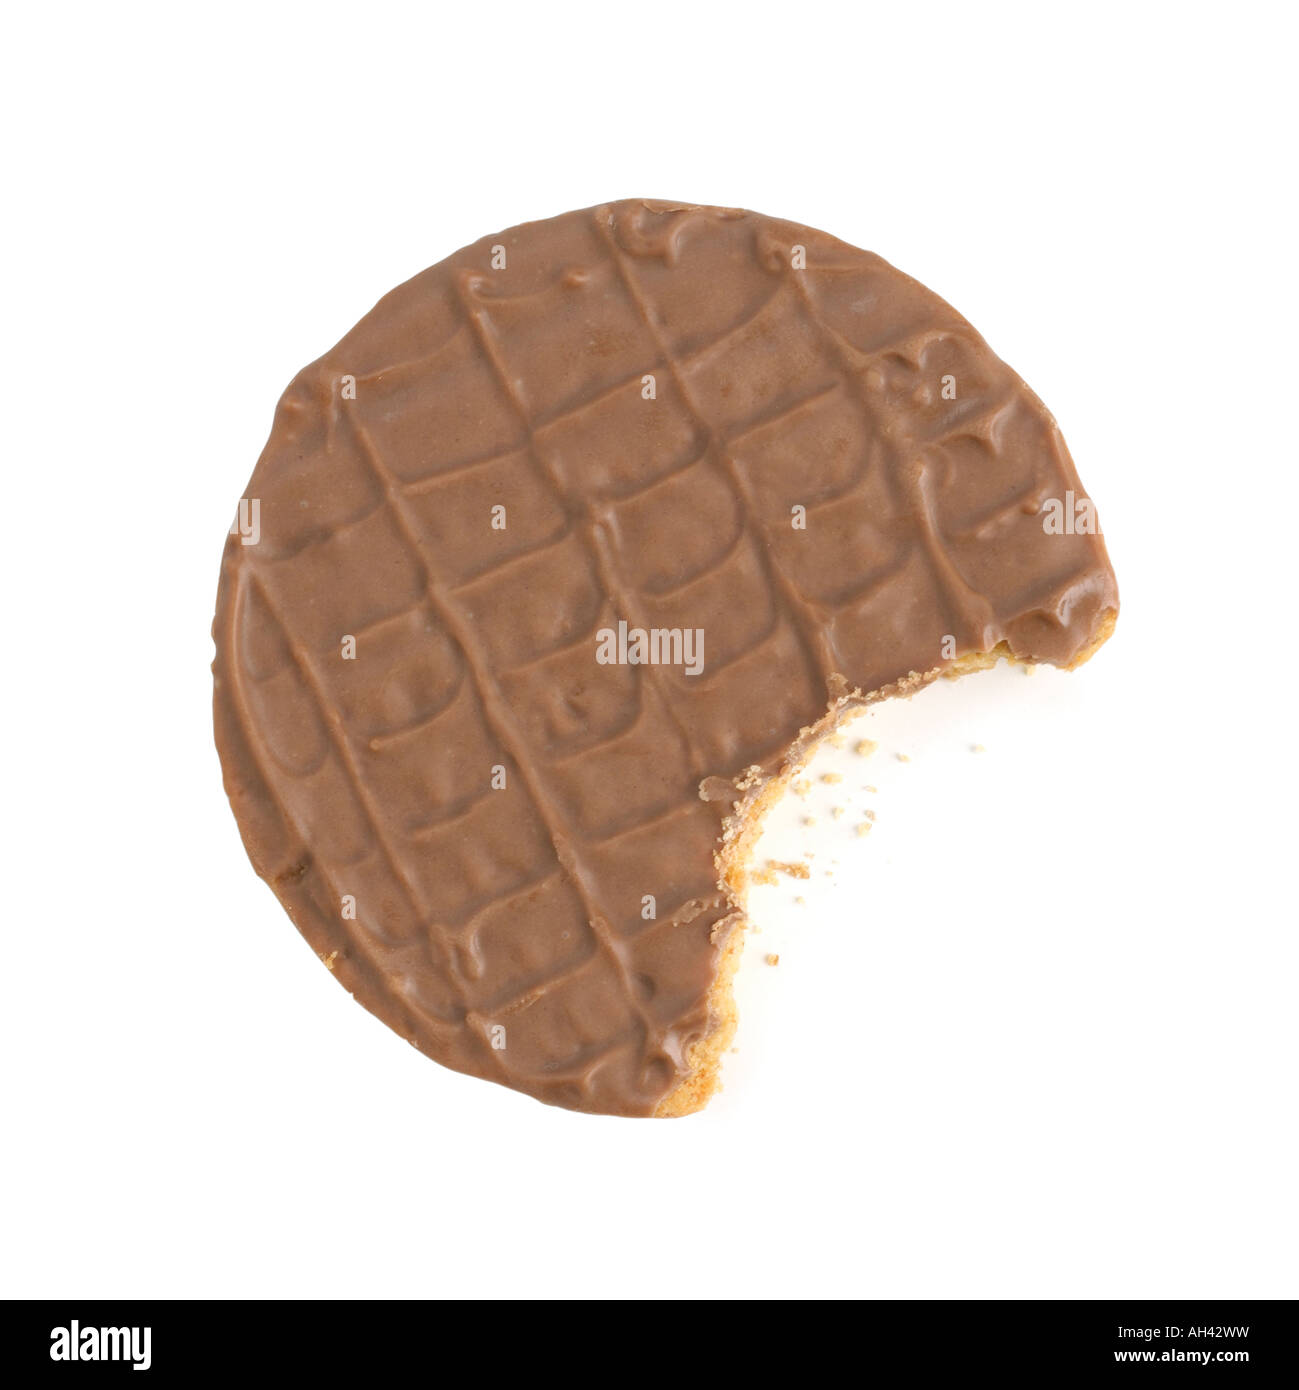 Vollmilch Schokolade Keks mit Biss herausgenommen Stockfoto